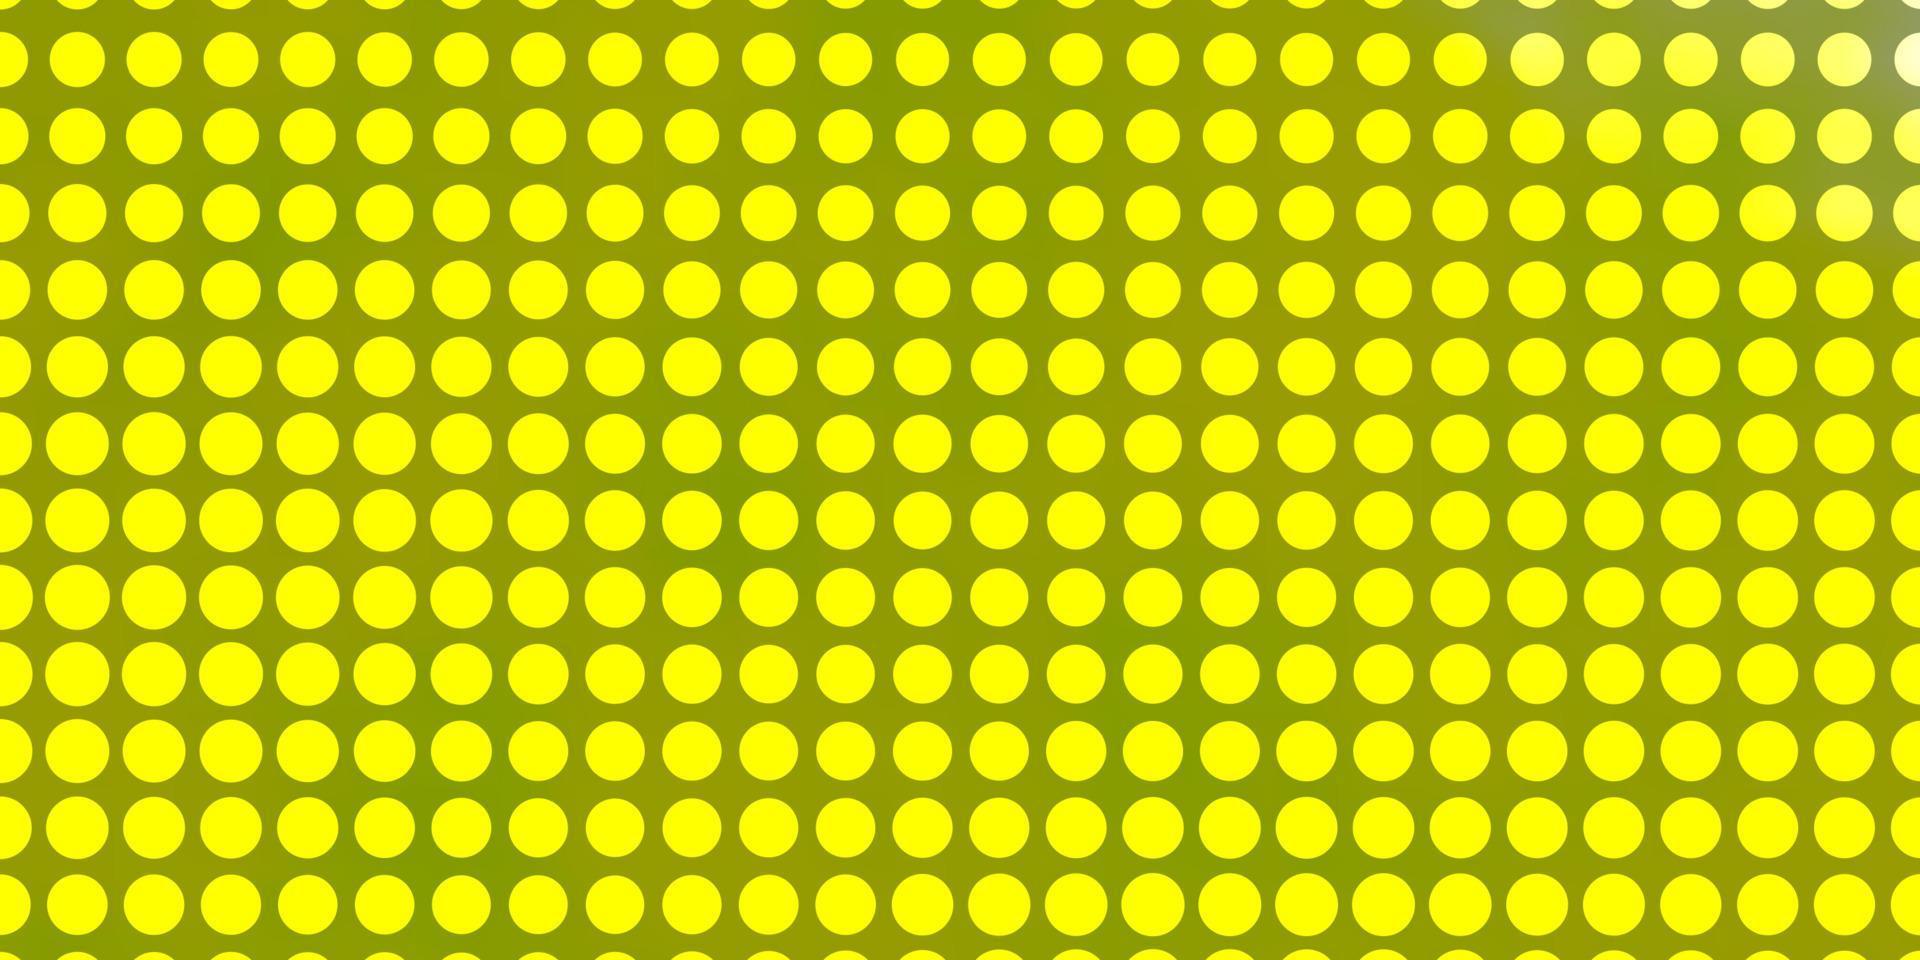 textura de vetor verde e amarelo claro com círculos.